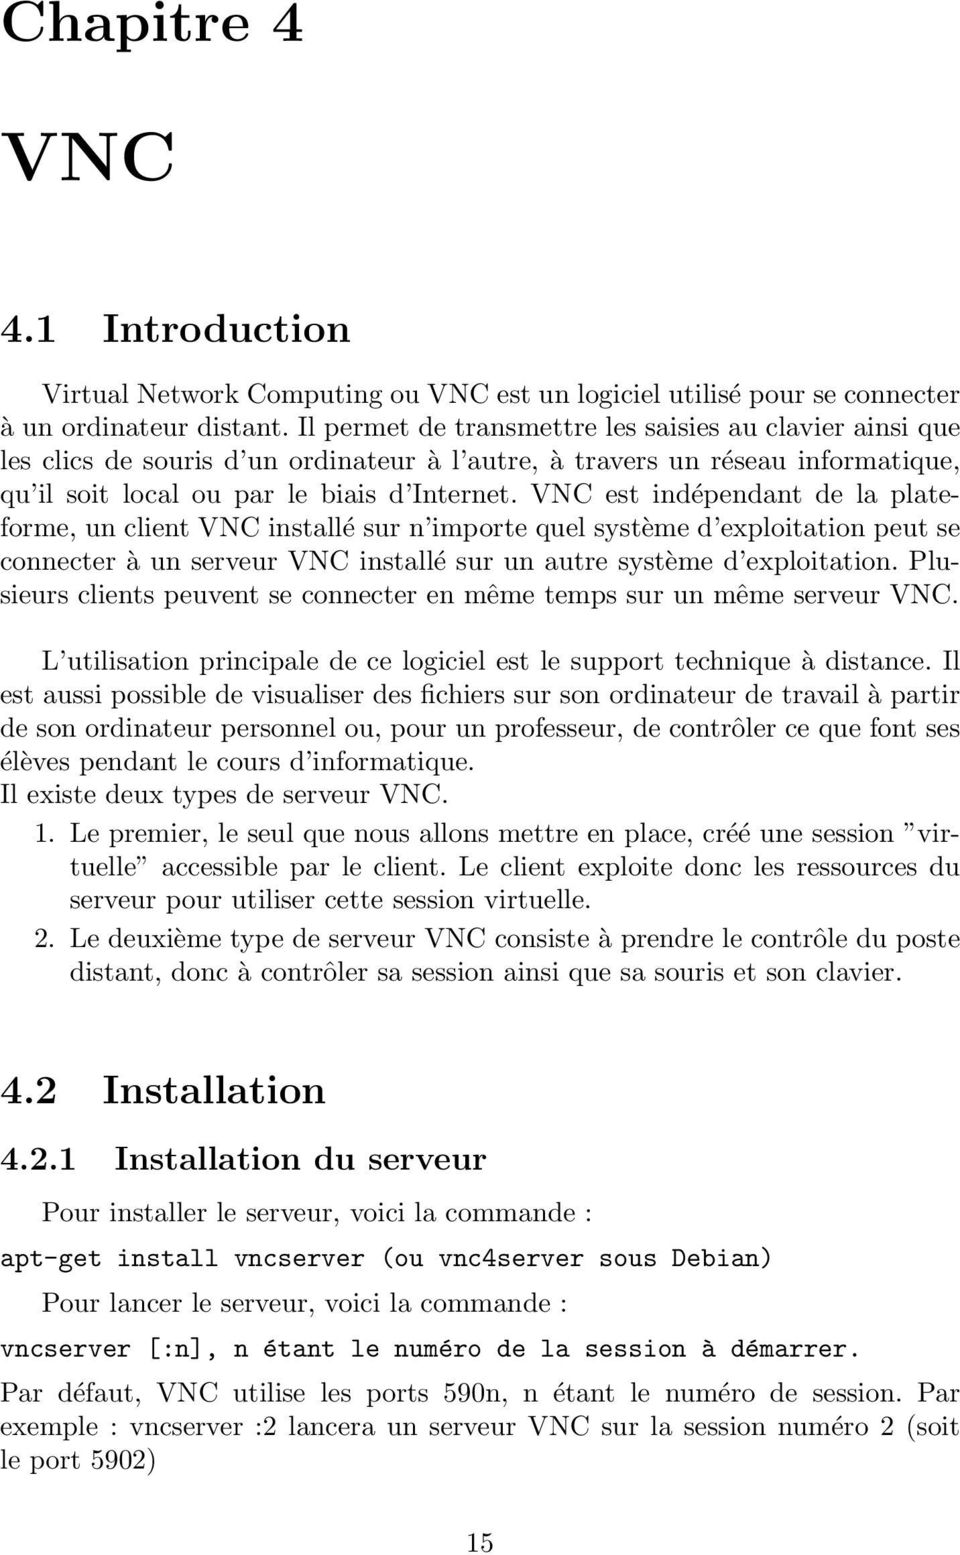 VNC est indépendant de la plateforme, un client VNC installé sur n importe quel système d exploitation peut se connecter à un serveur VNC installé sur un autre système d exploitation.